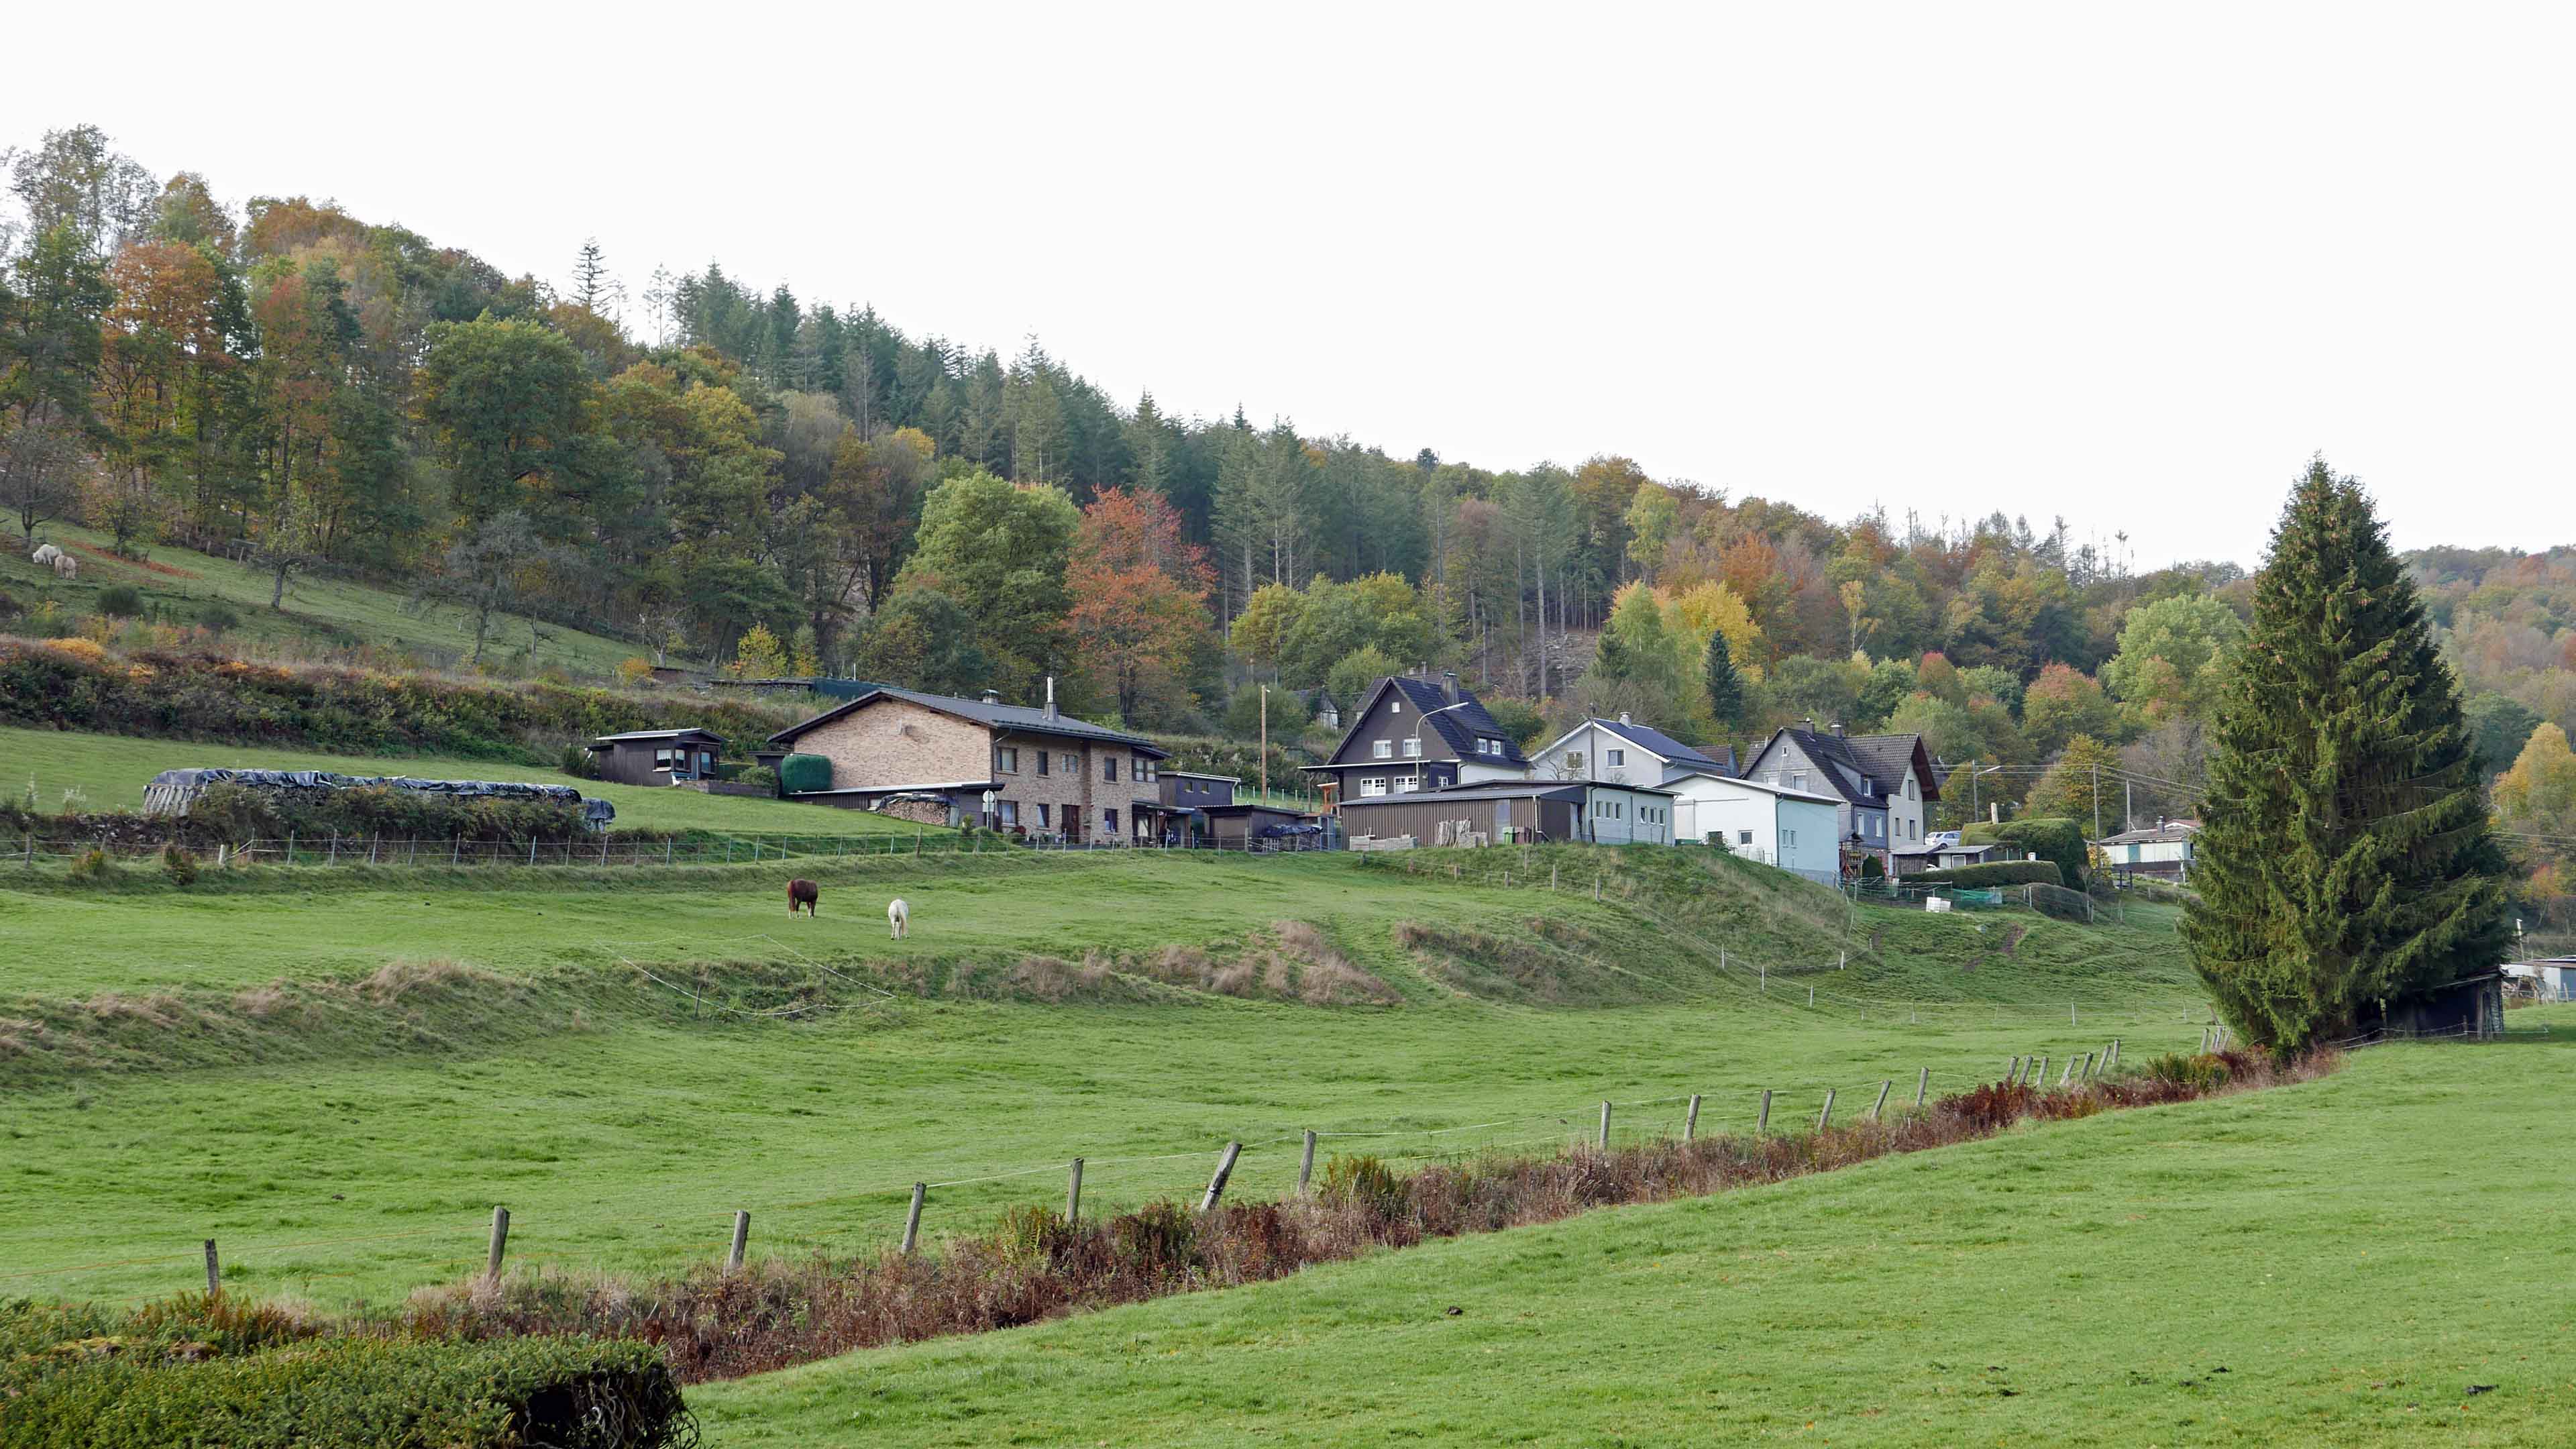 Morsbach: Perfekt für das Landleben in der Natur, herrliche Ortsrand-/Naturlage bei Morsbach (3 km)